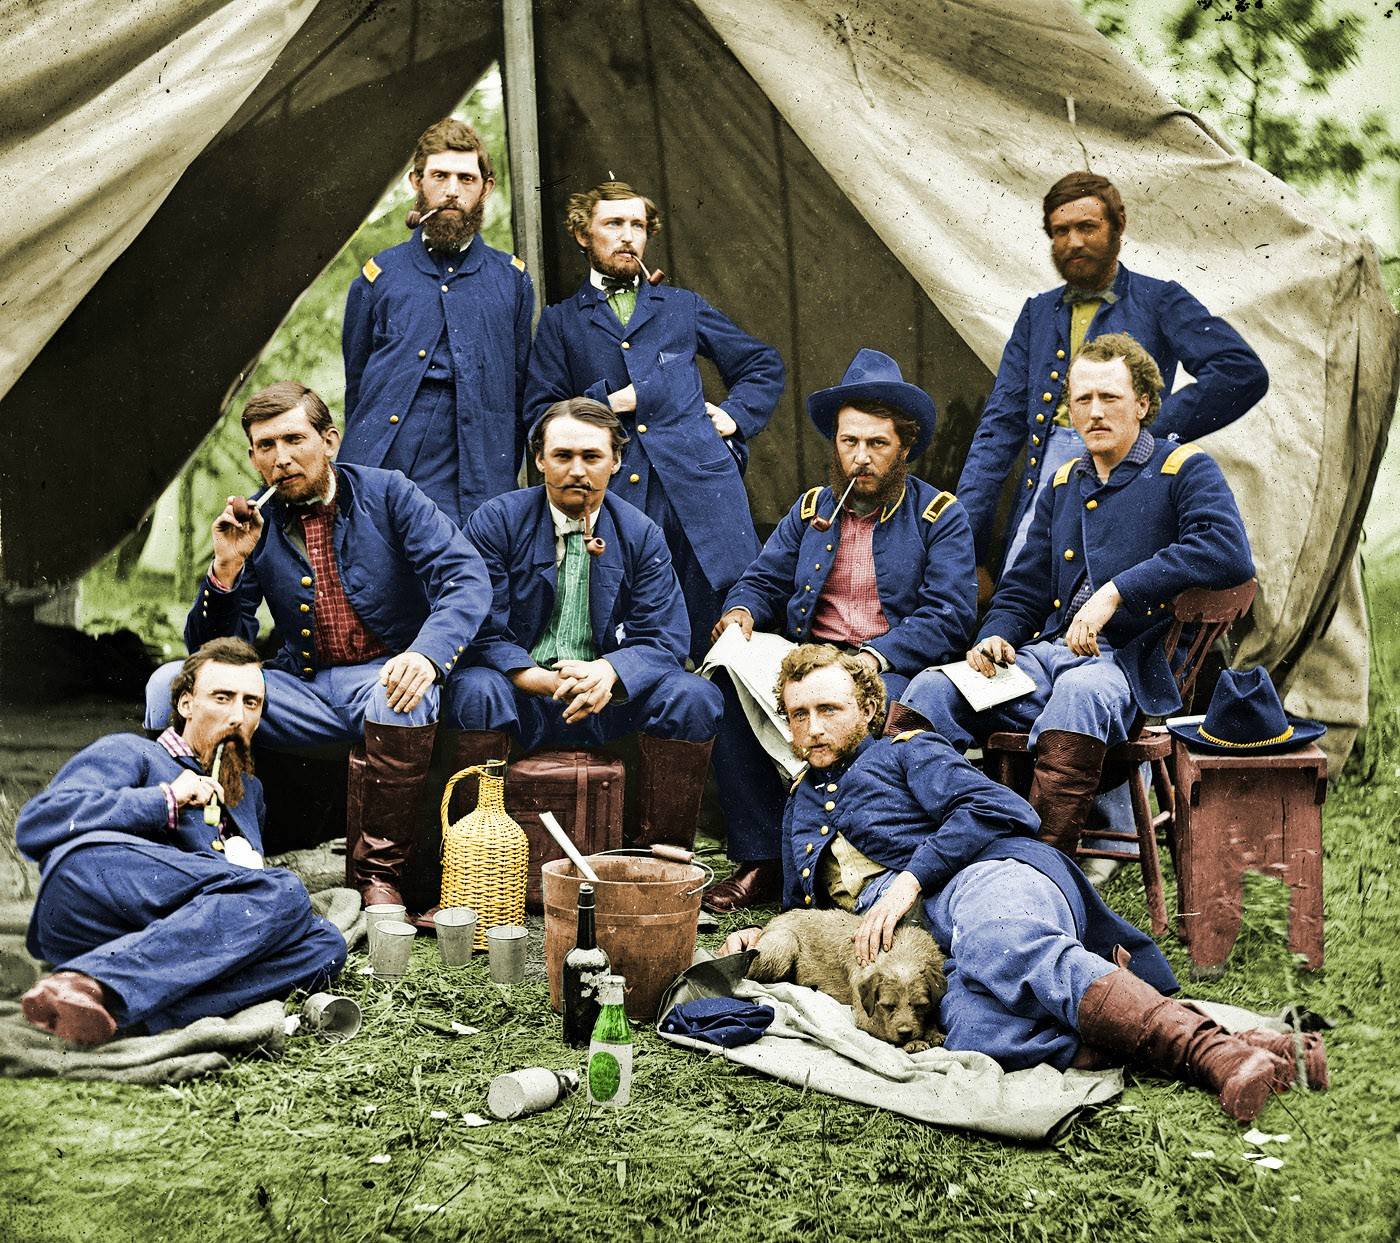 union soldiers taking a break 1863